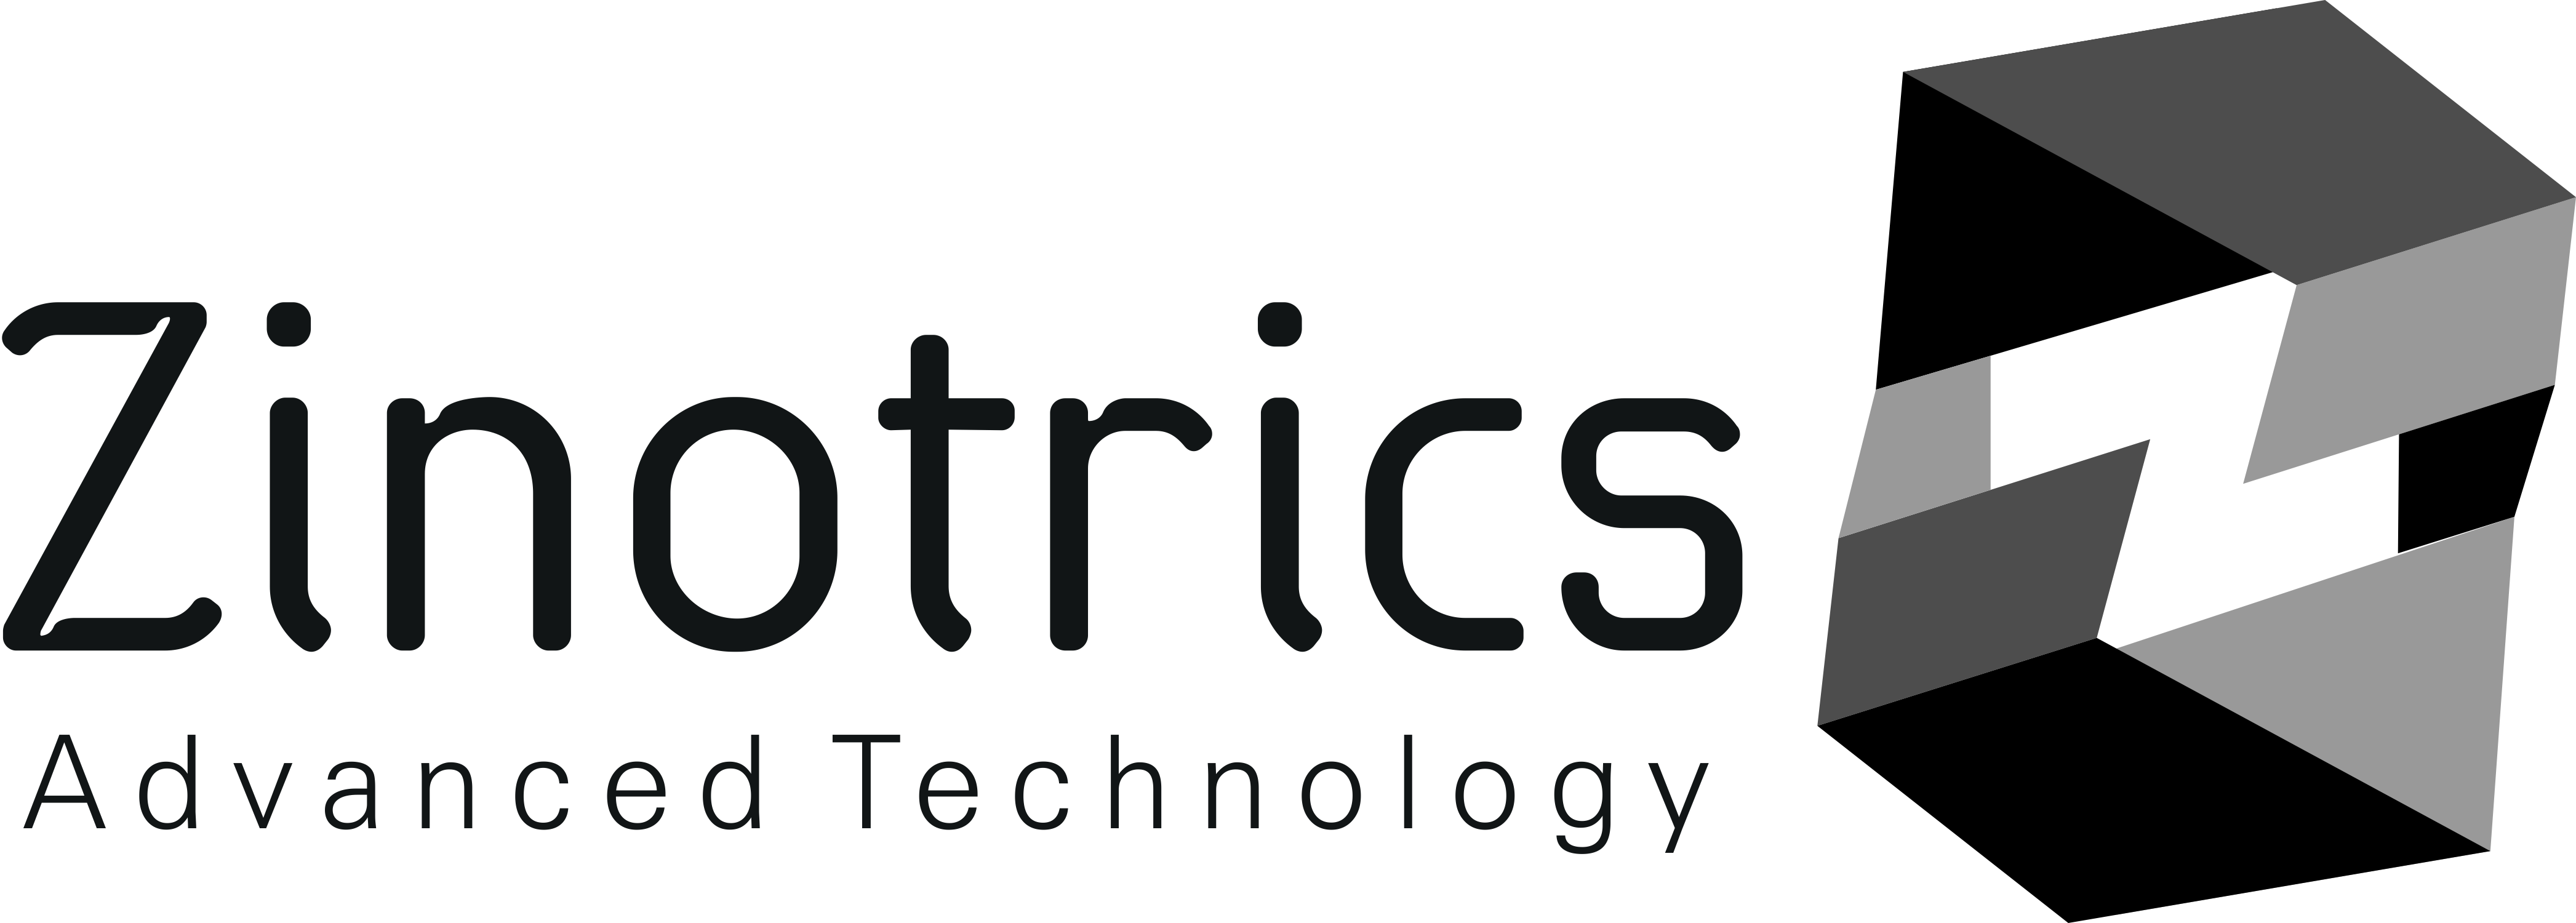 Zinotrics Advanced Technology